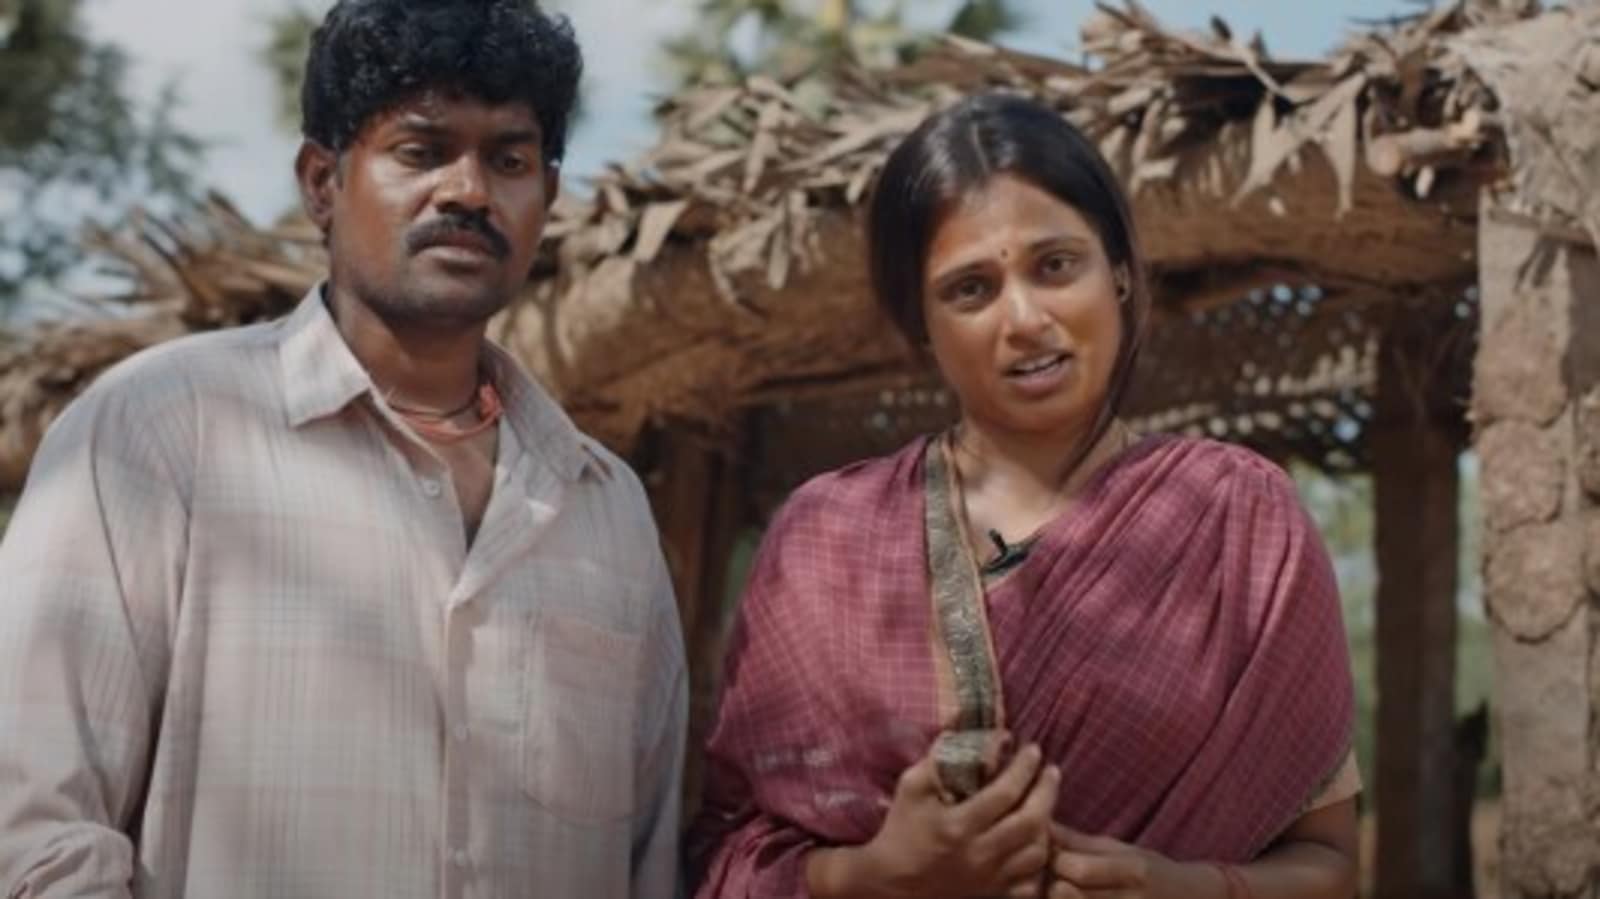 Raame Aandalum Raavane Aandalum movie review: Suriya-produced film has  heart of Peepli Live - Hindustan Times